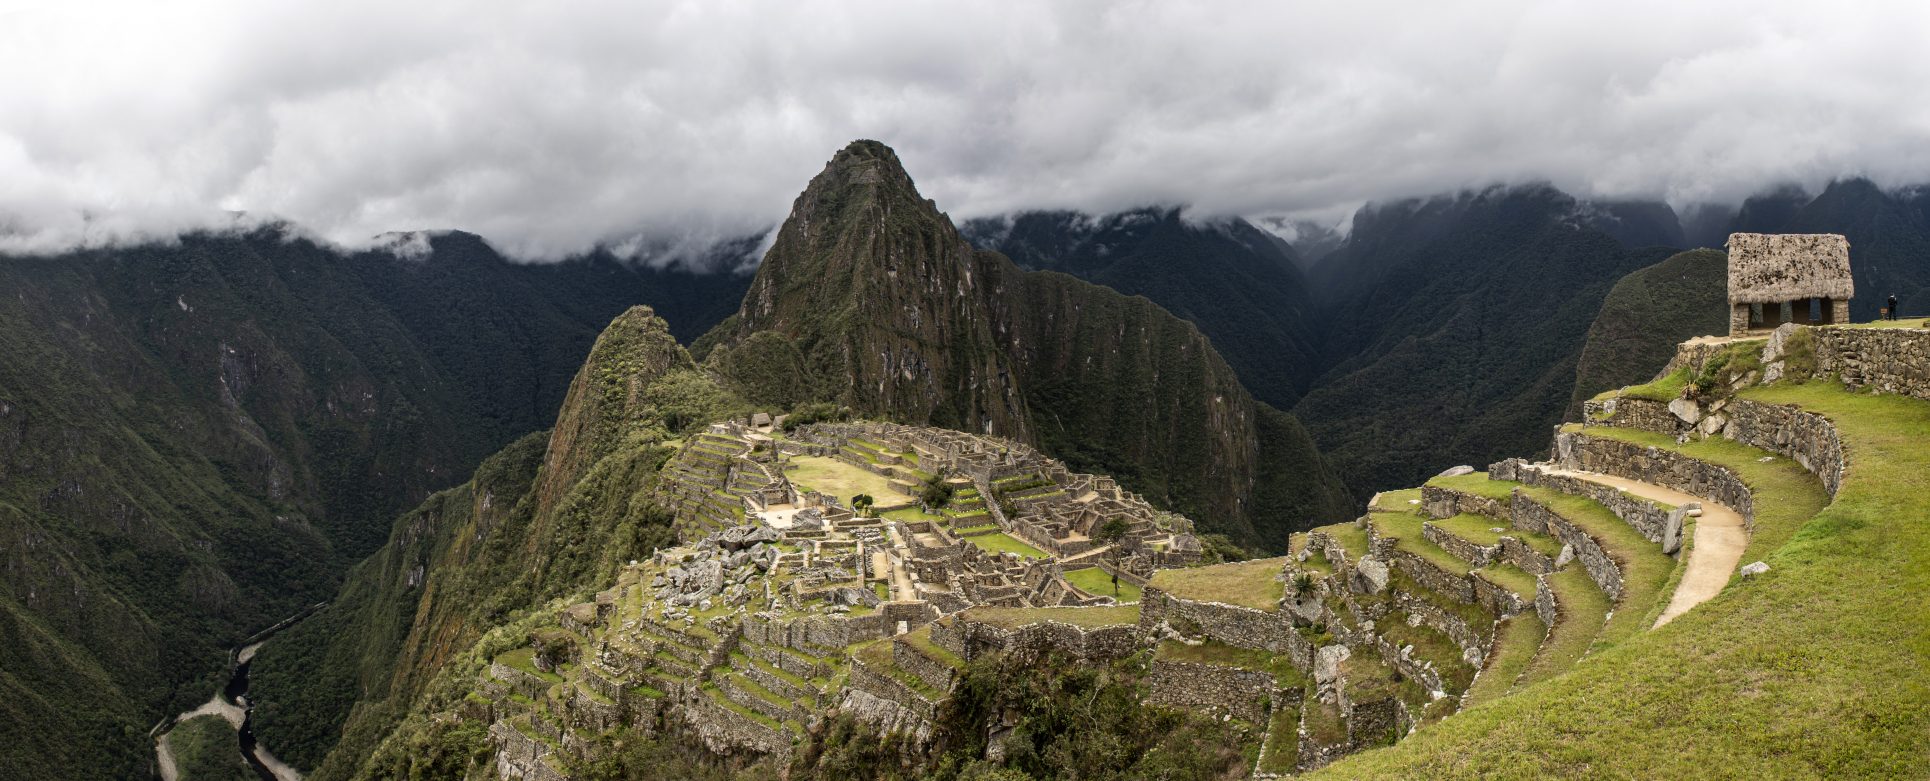 Reabre Machu Picchu tras ocho meses de cierre a causa de la pandemia